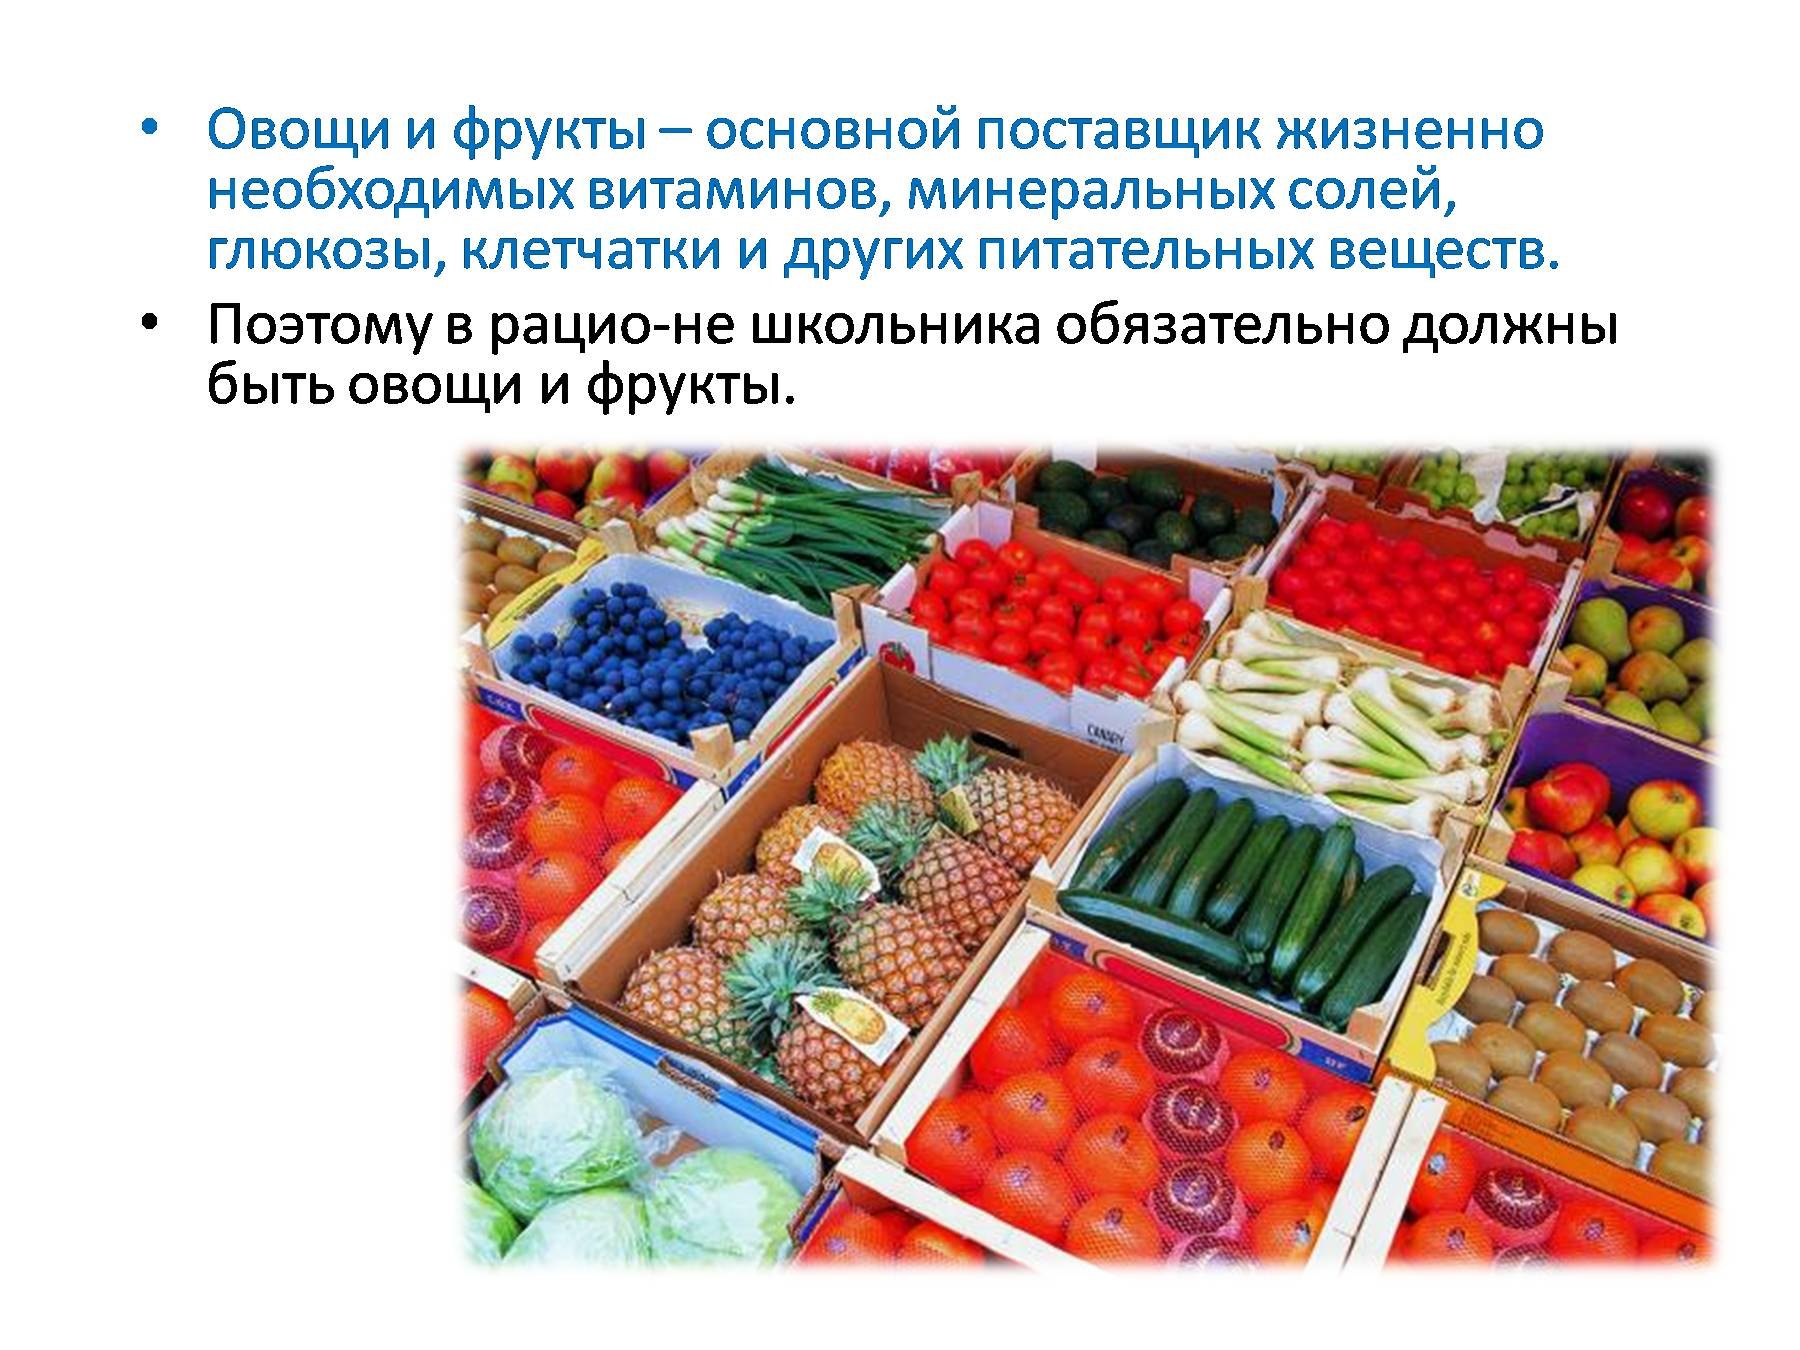 Задачи на свежие фрукты. Технология приготовления блюд из овощей и фруктов. Блюда из овощей и фруктов презентация. Поставщики овощи и фрукты. Технология приготовления блюд из овощей и фруктов 5 класс.